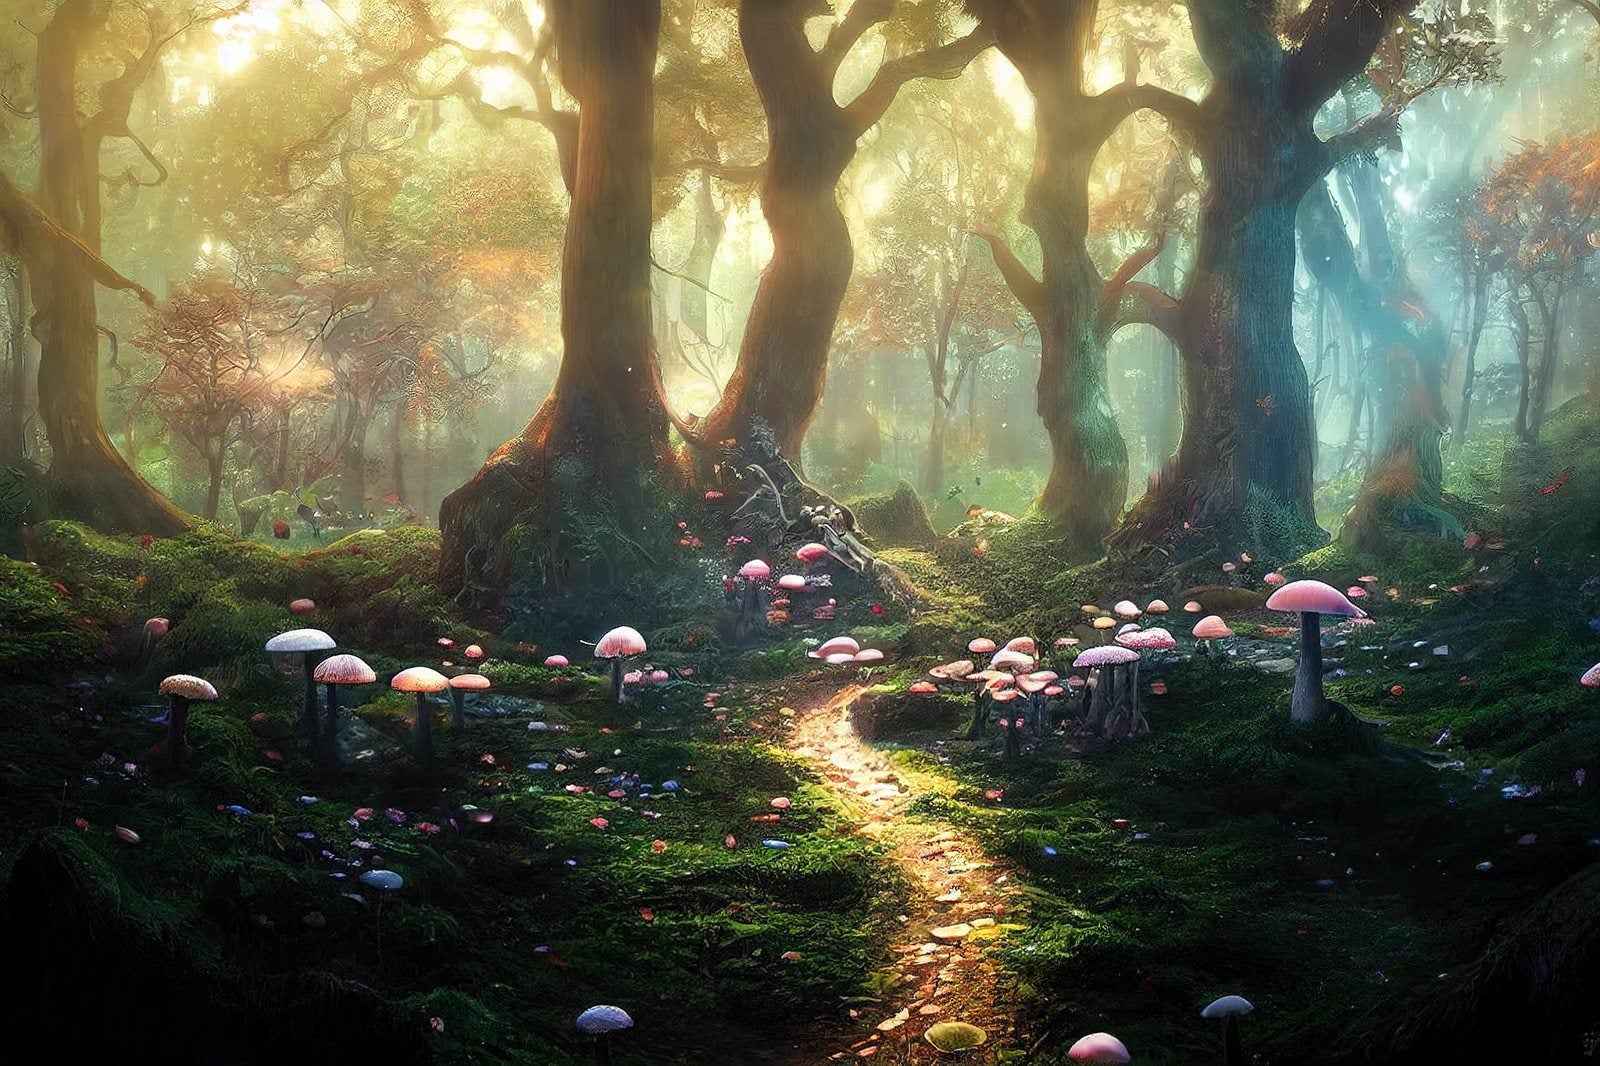 「マジカルきのこが生える森」の写真